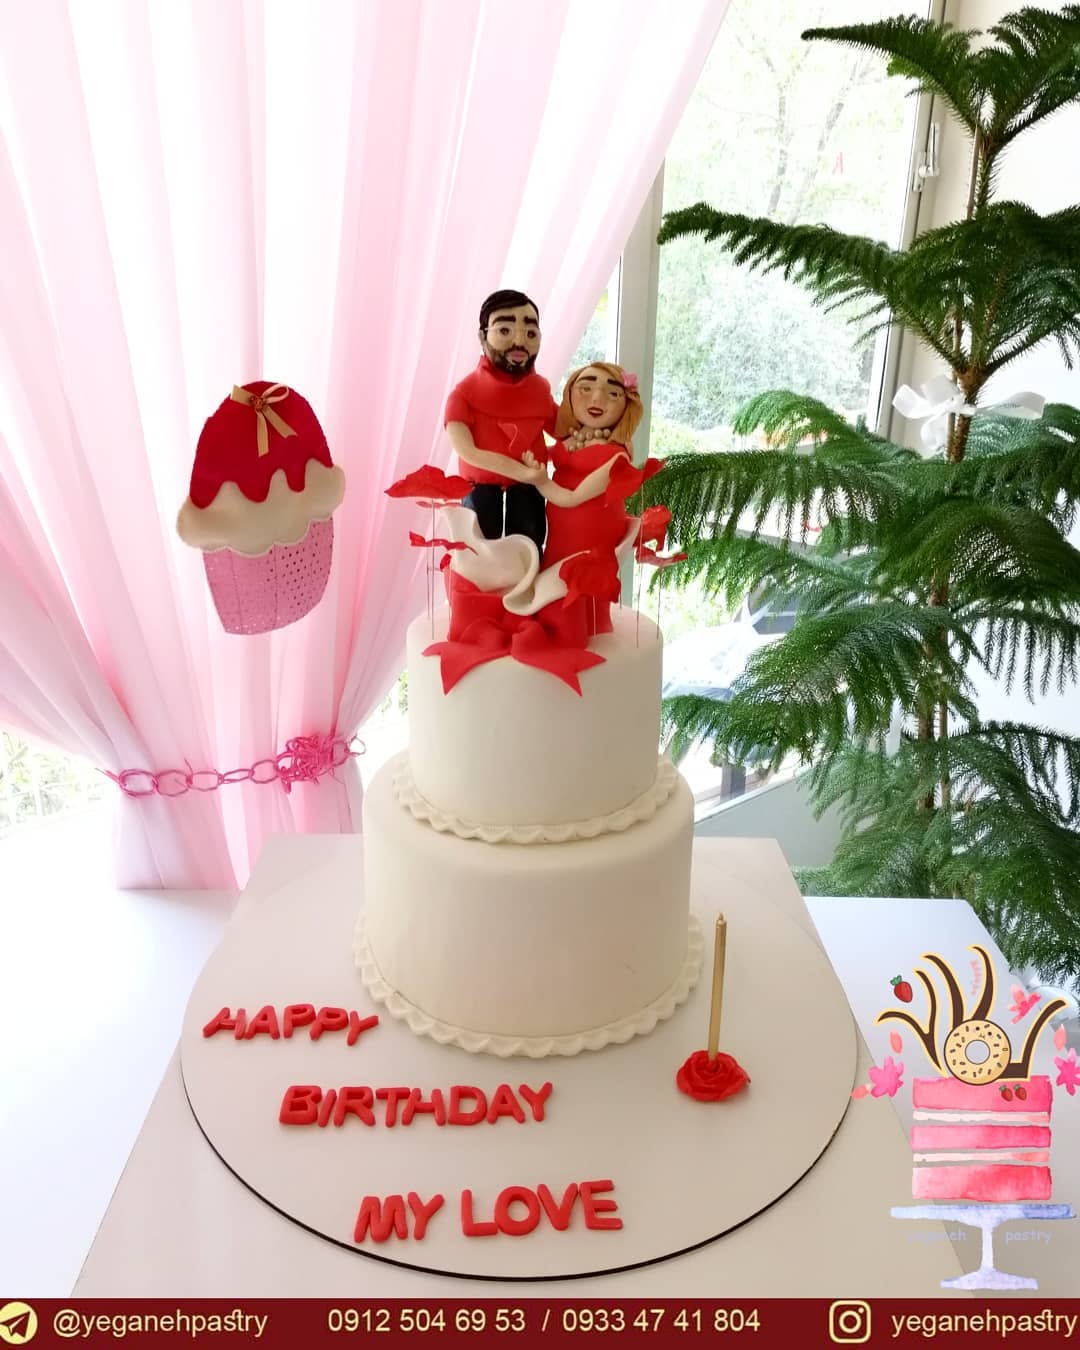 کیک عروسی و کیک تولد یگانه ارشاد